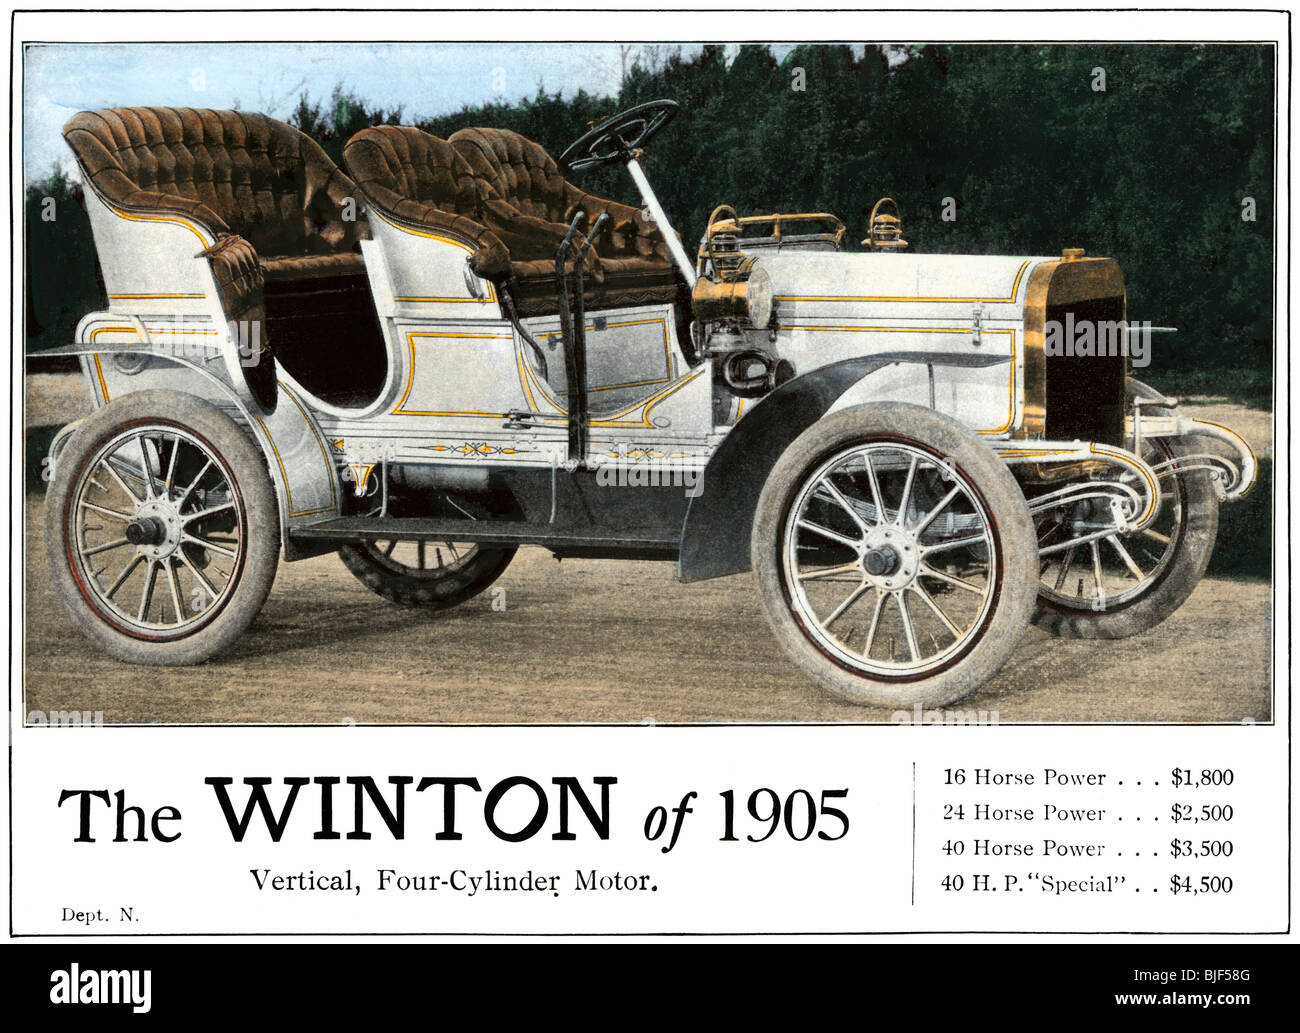 Publicidad para el automóvil Winton, modelo de 4 cilindros, con la lista de precios de 1905. Medias tintas coloreadas a mano de una fotografía Foto de stock